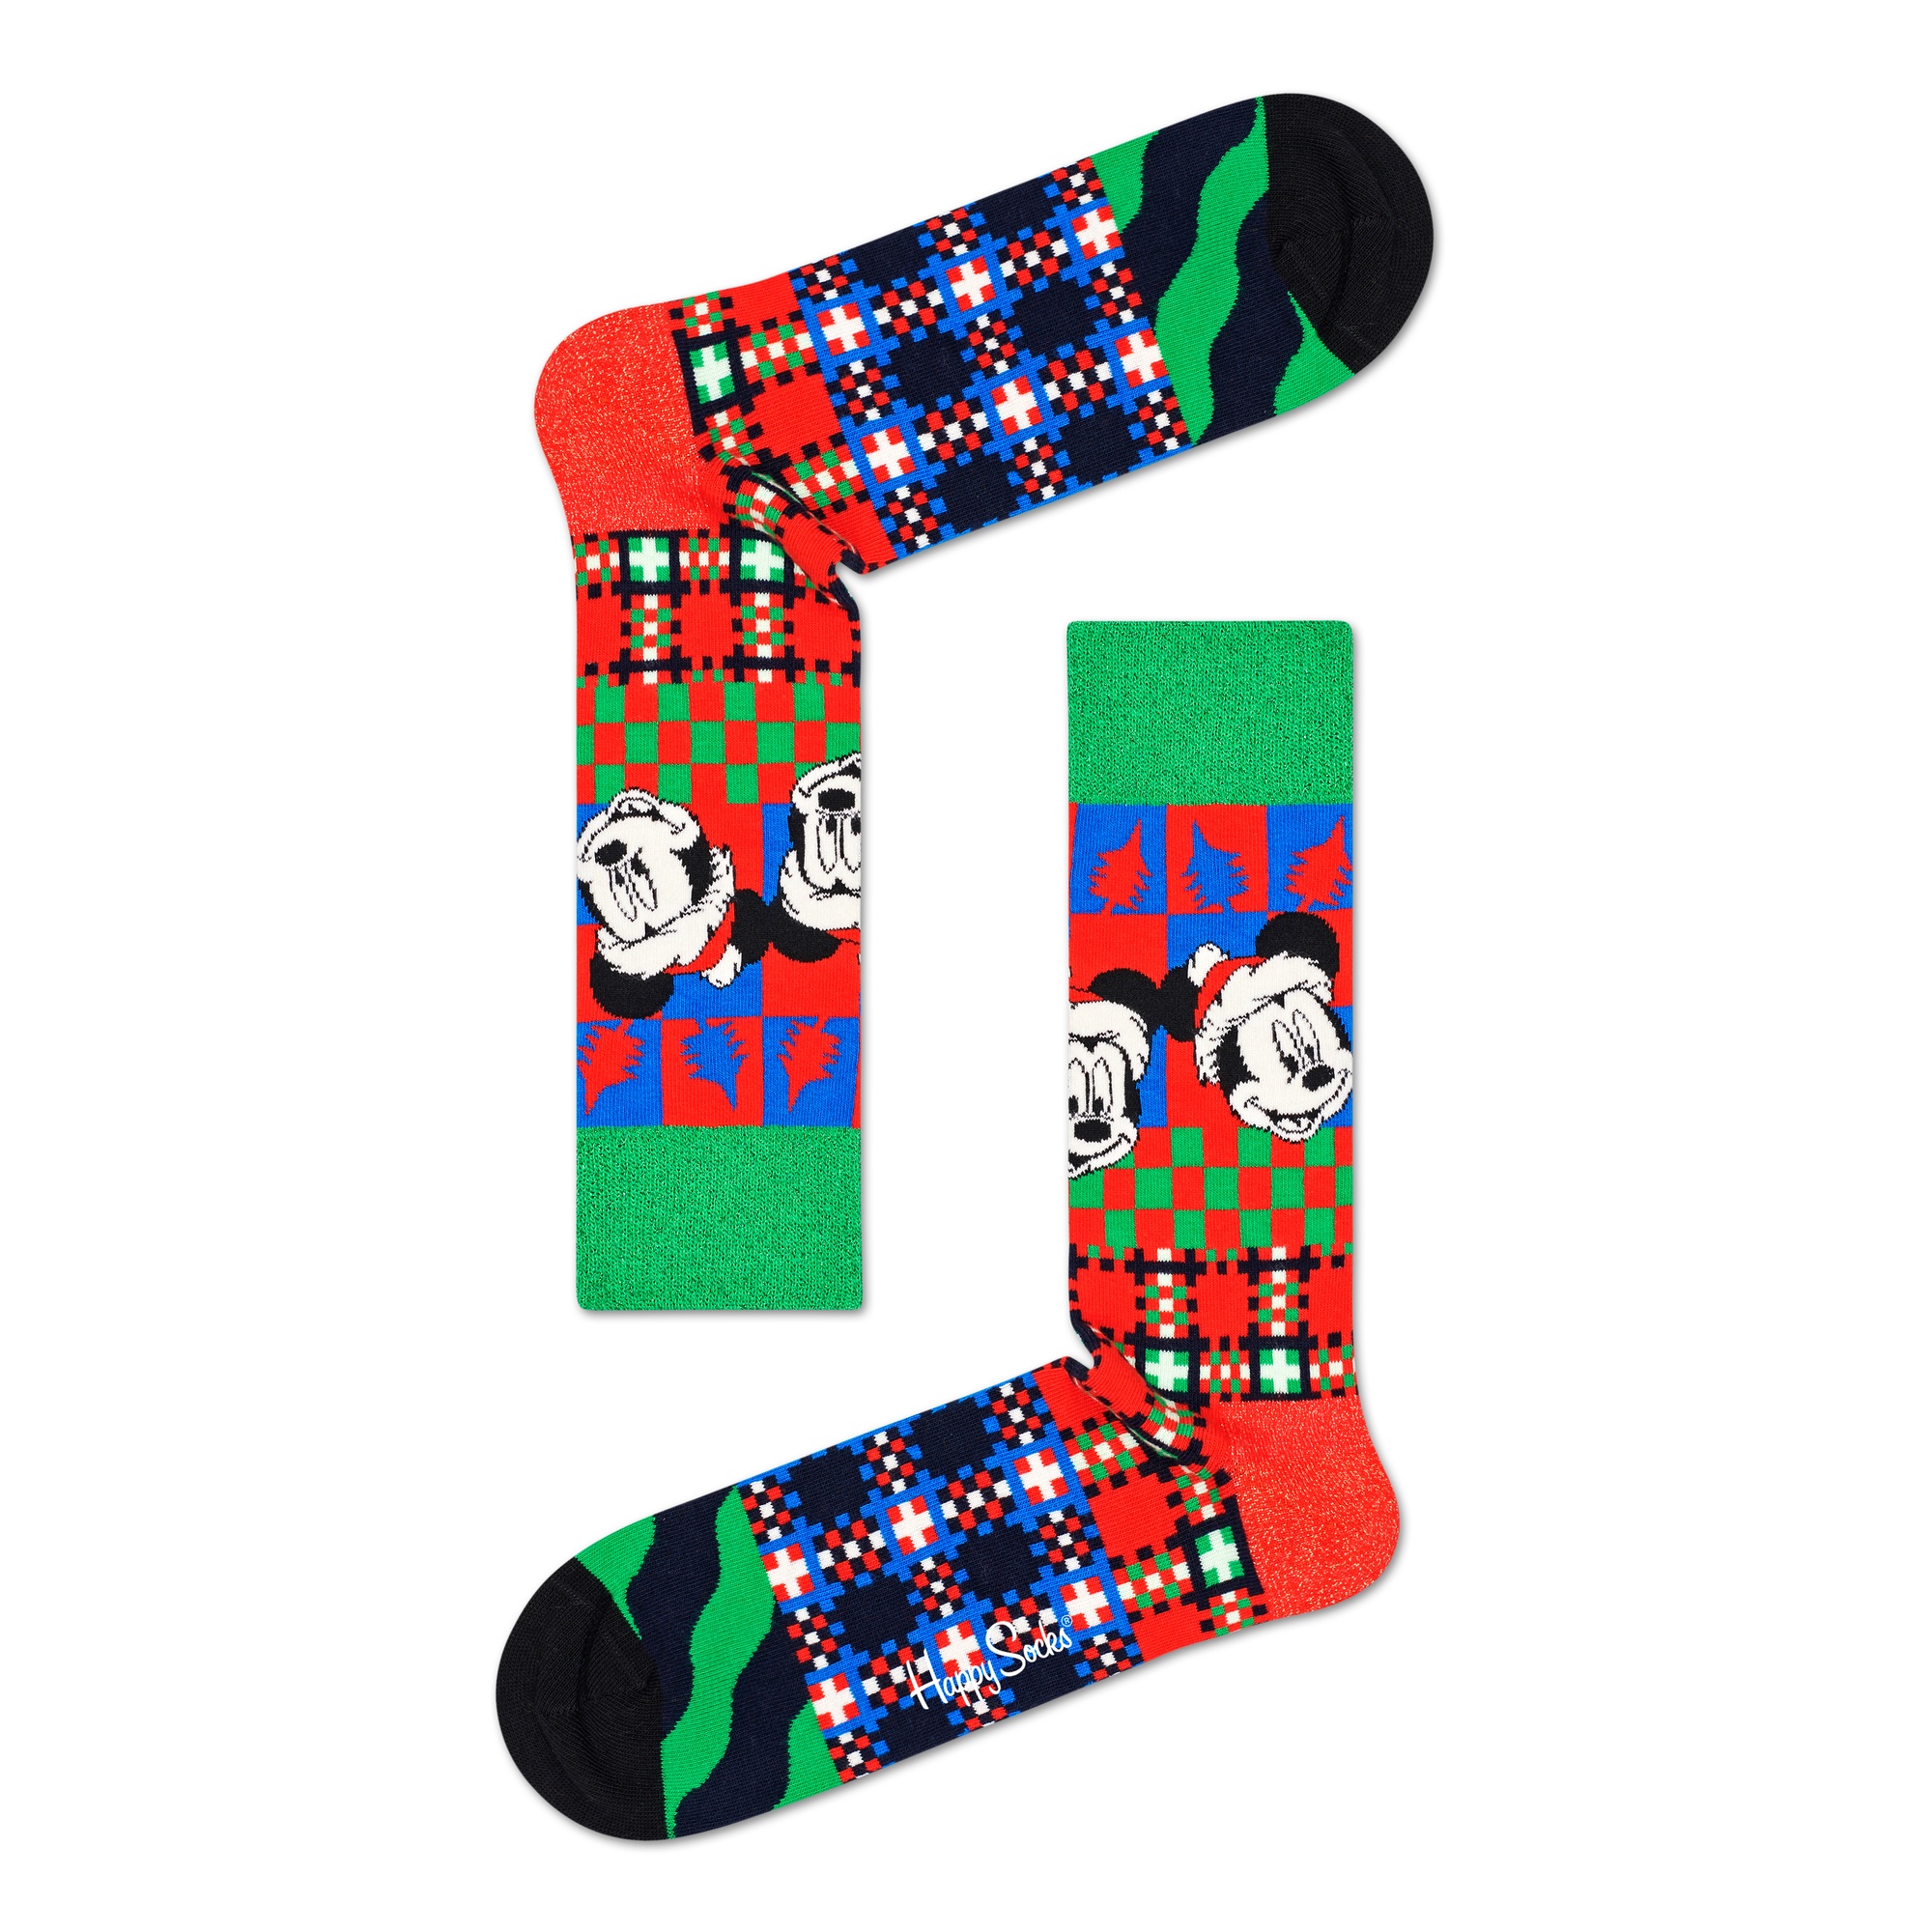 Par De Calcetines Happy Socks Disney - multicolor - 